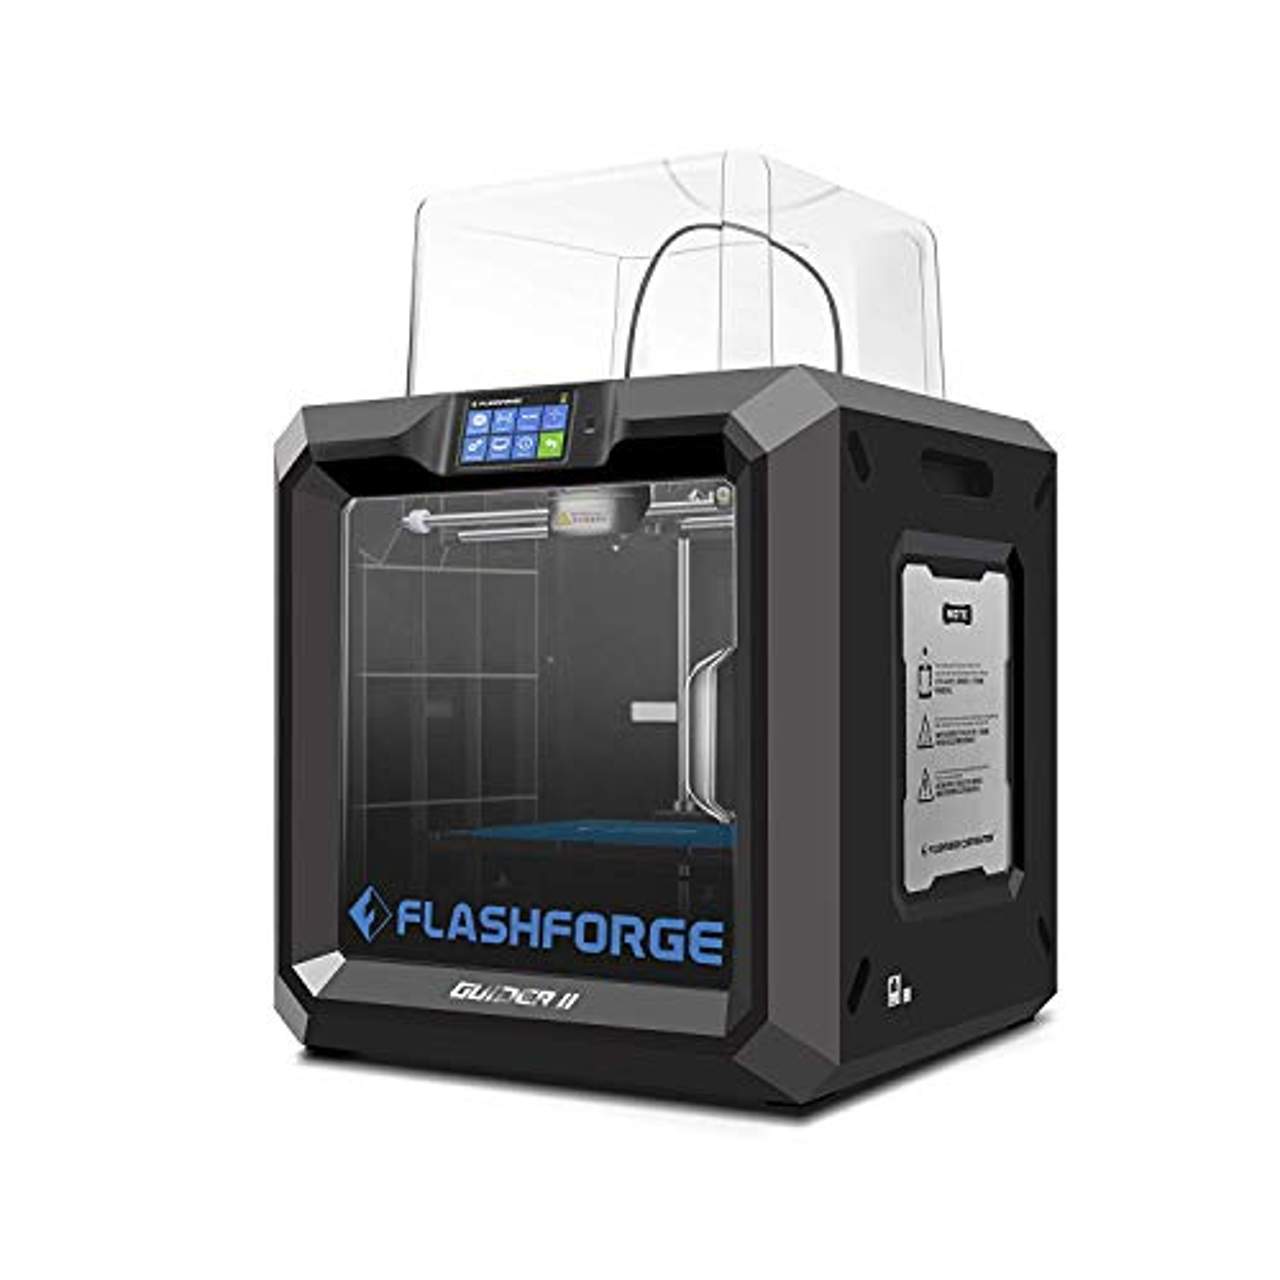 Madat Flashforge Guider II 3D-Großformatdrucker in Industriequalität 3D Drucker